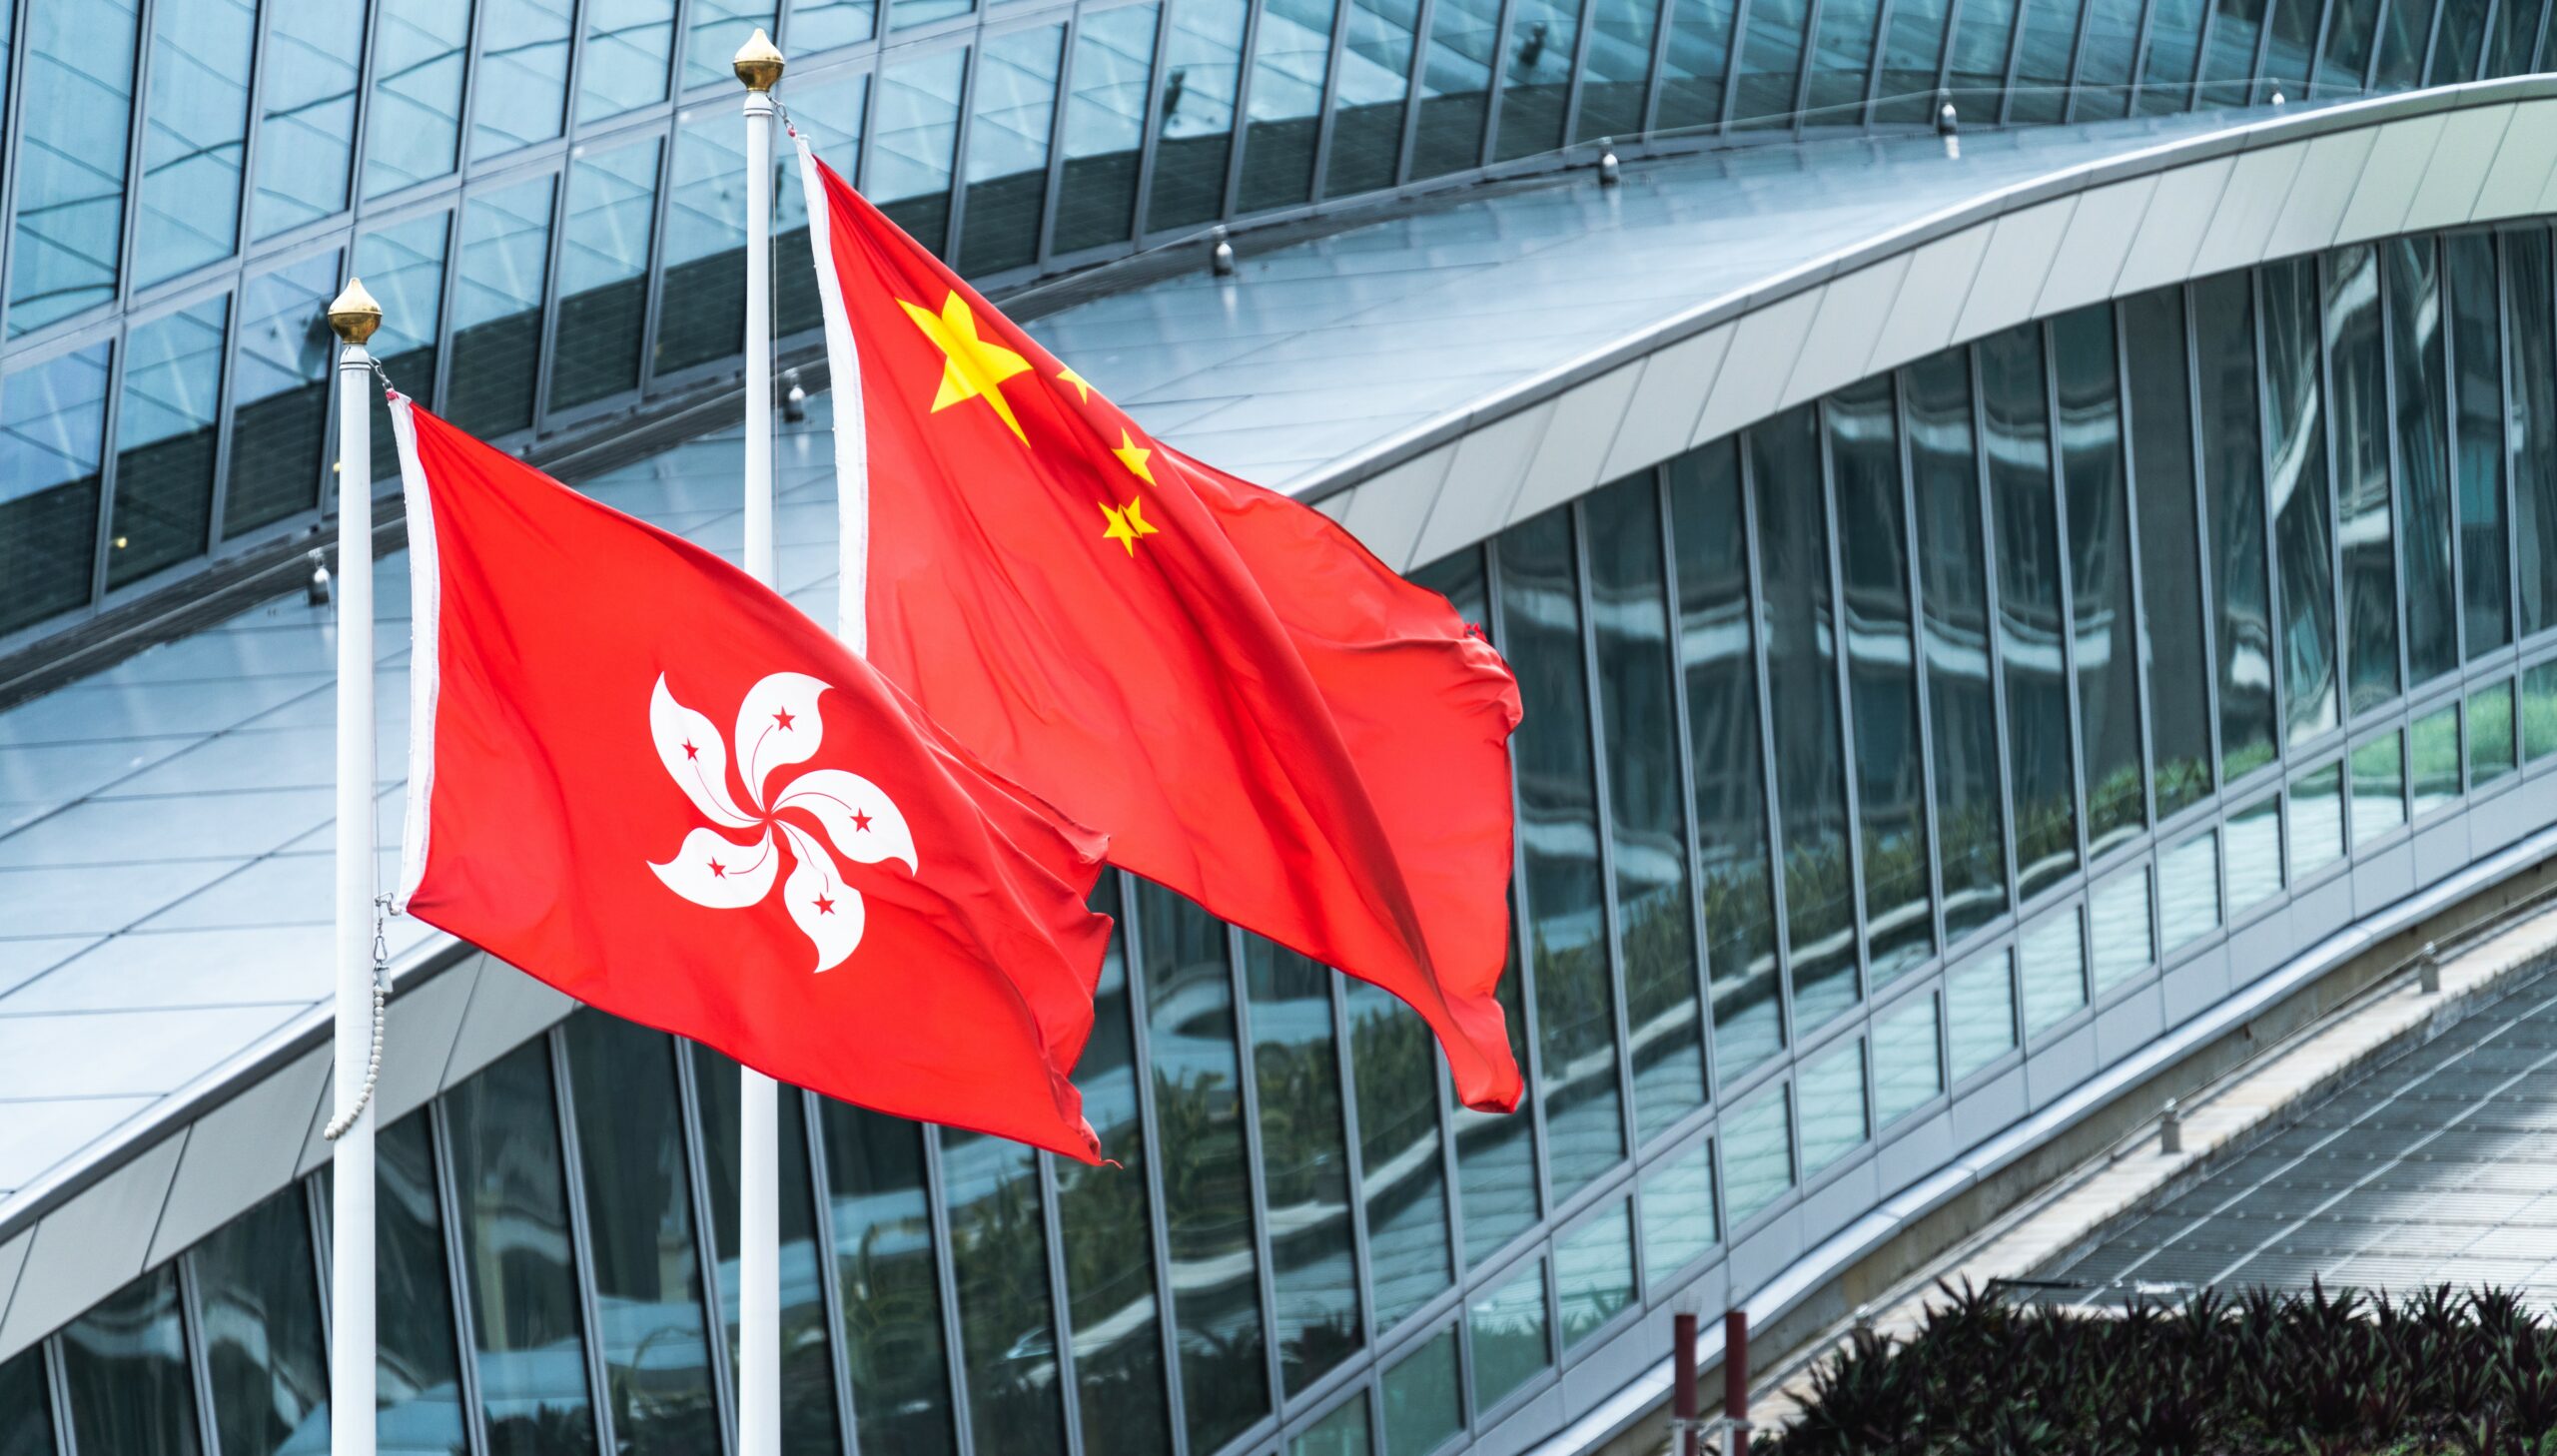 Hong Kong / China | Implications of converging legal systems